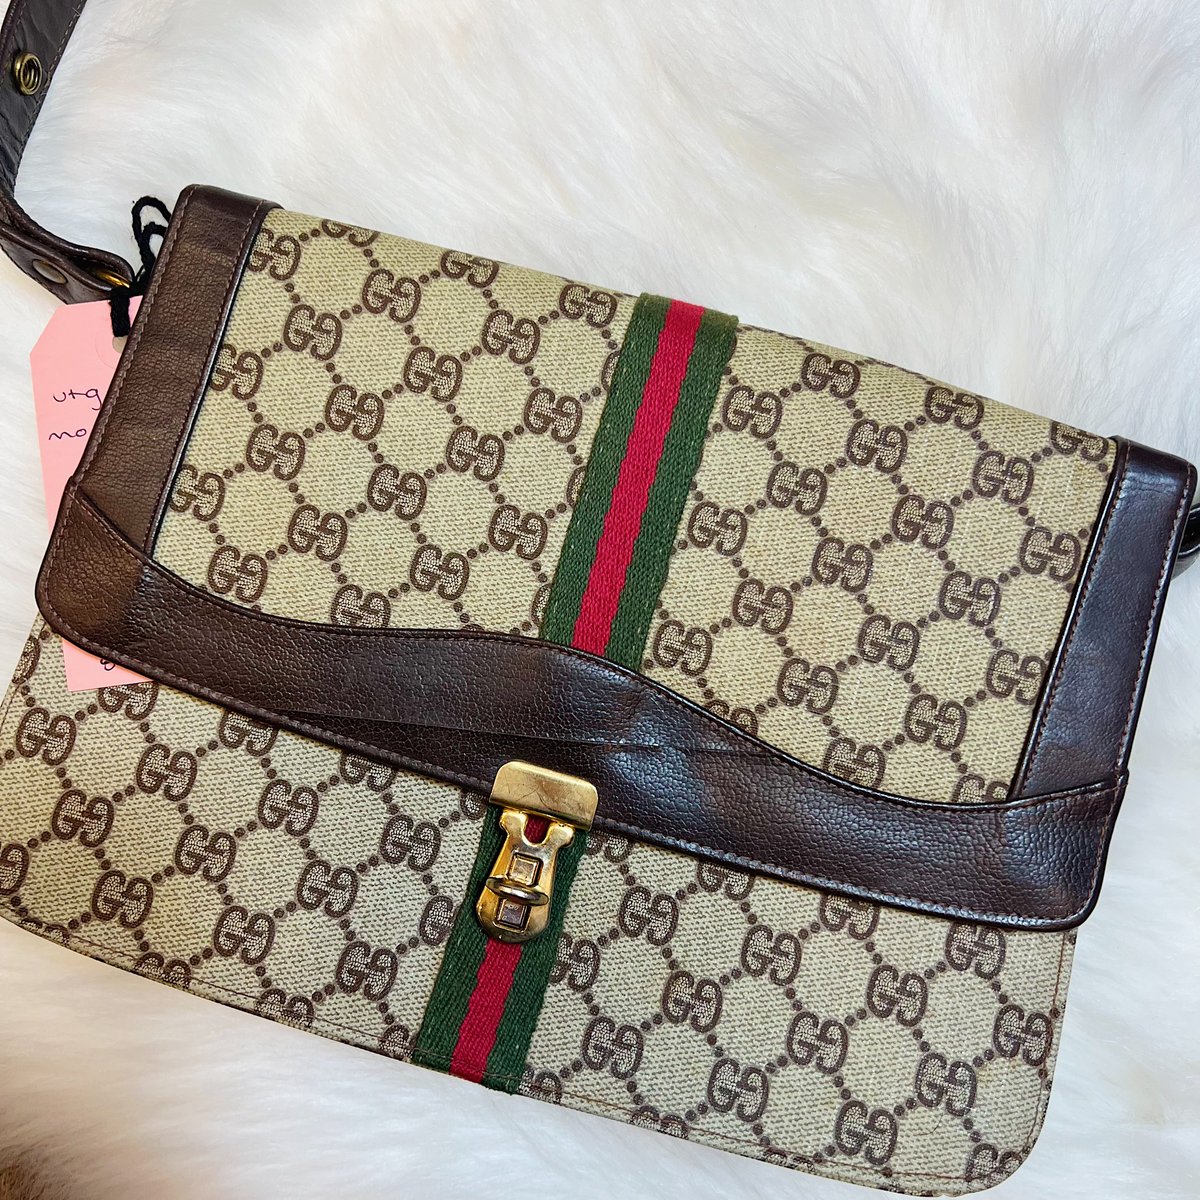 Gucci Original Vintage Handbags